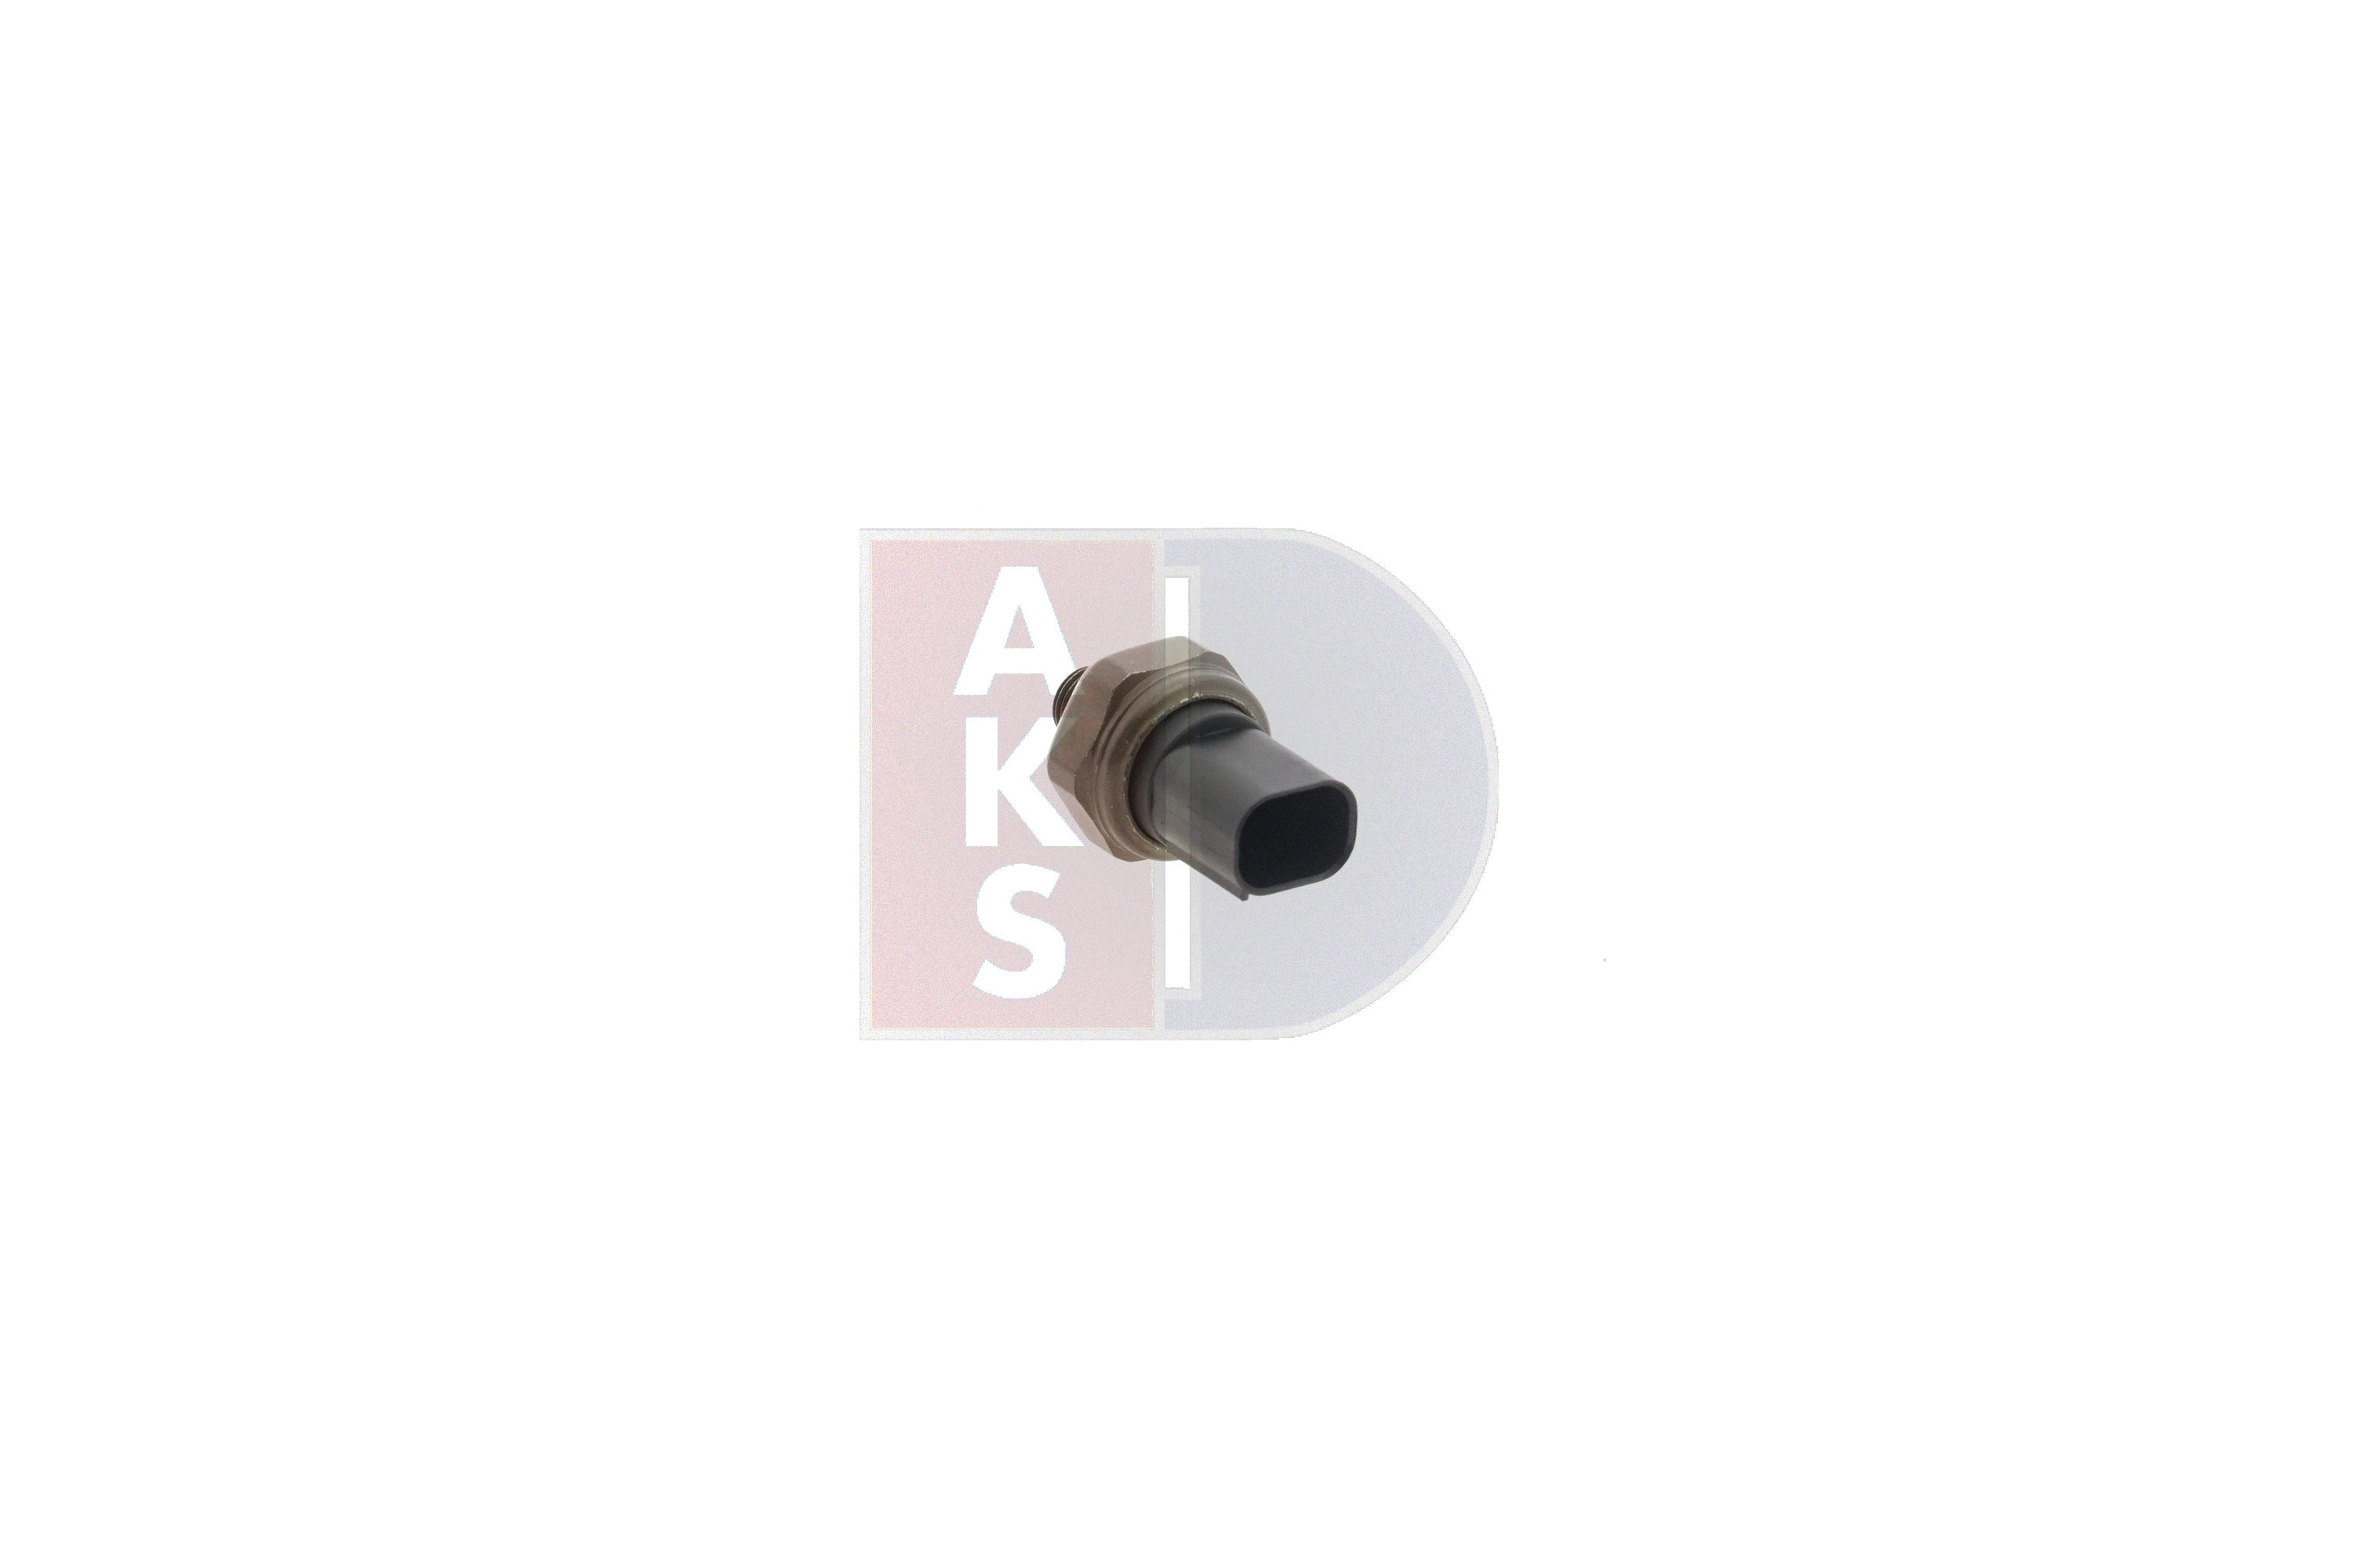 AKS DASIS 860111N Pressure switch E92 320d 2.0 184 hp Diesel 2010 price